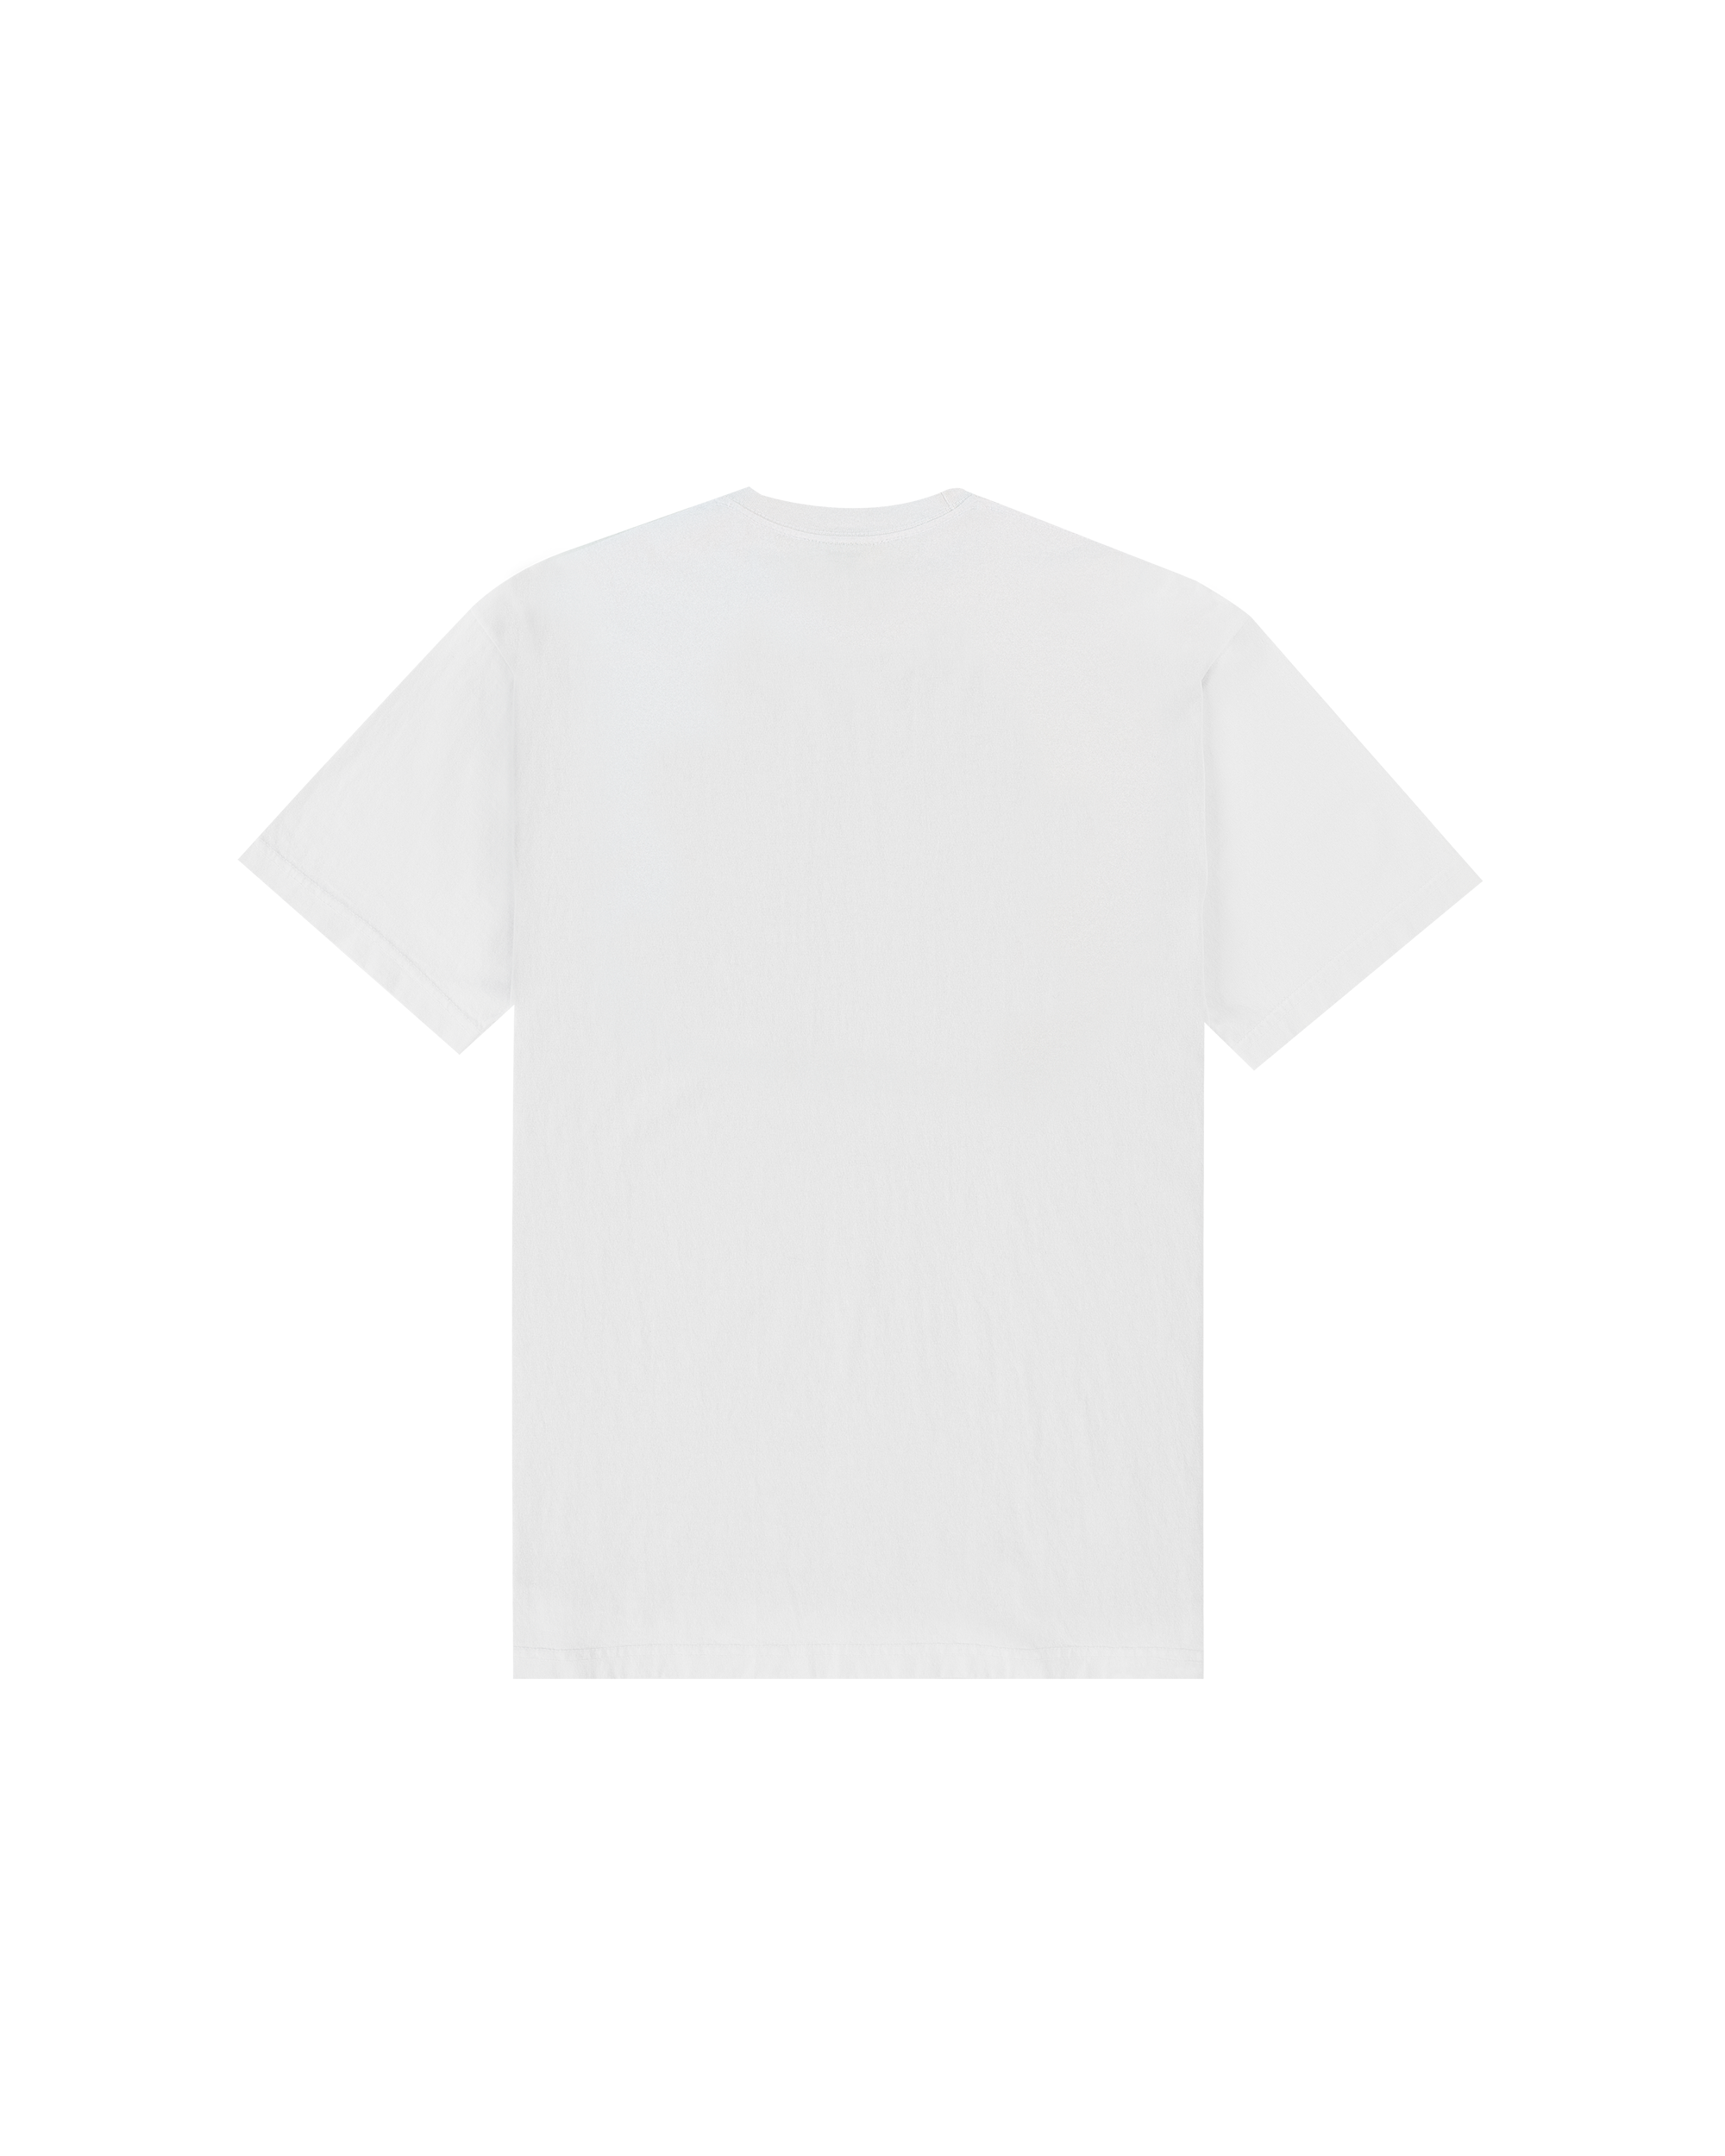 Refurbishing T-shirt - White